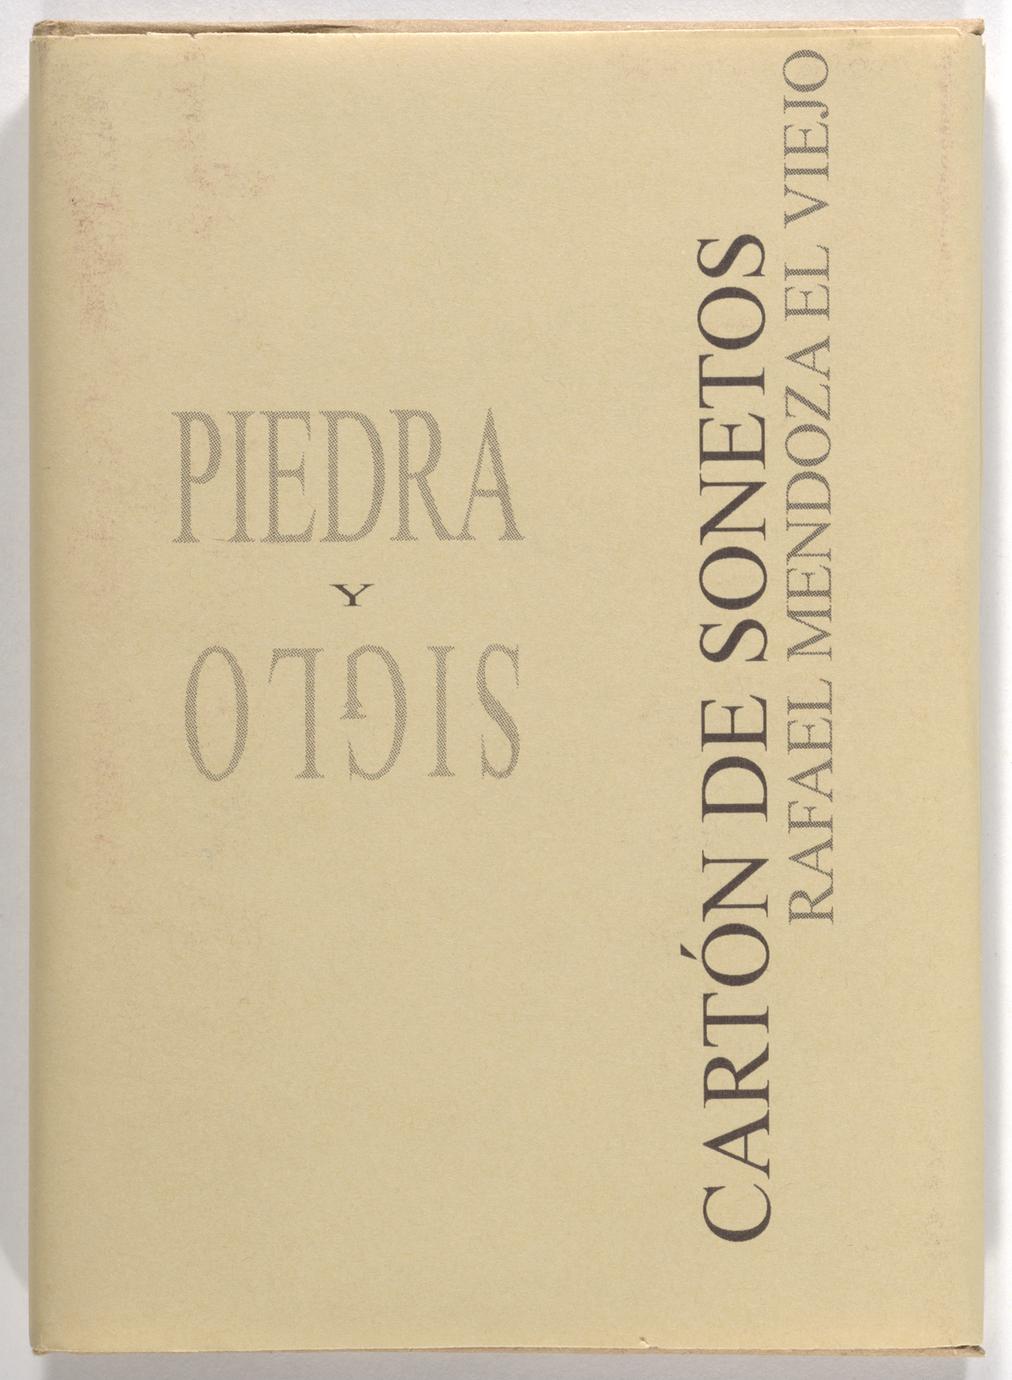 Cartón de sonetos (1 of 3)